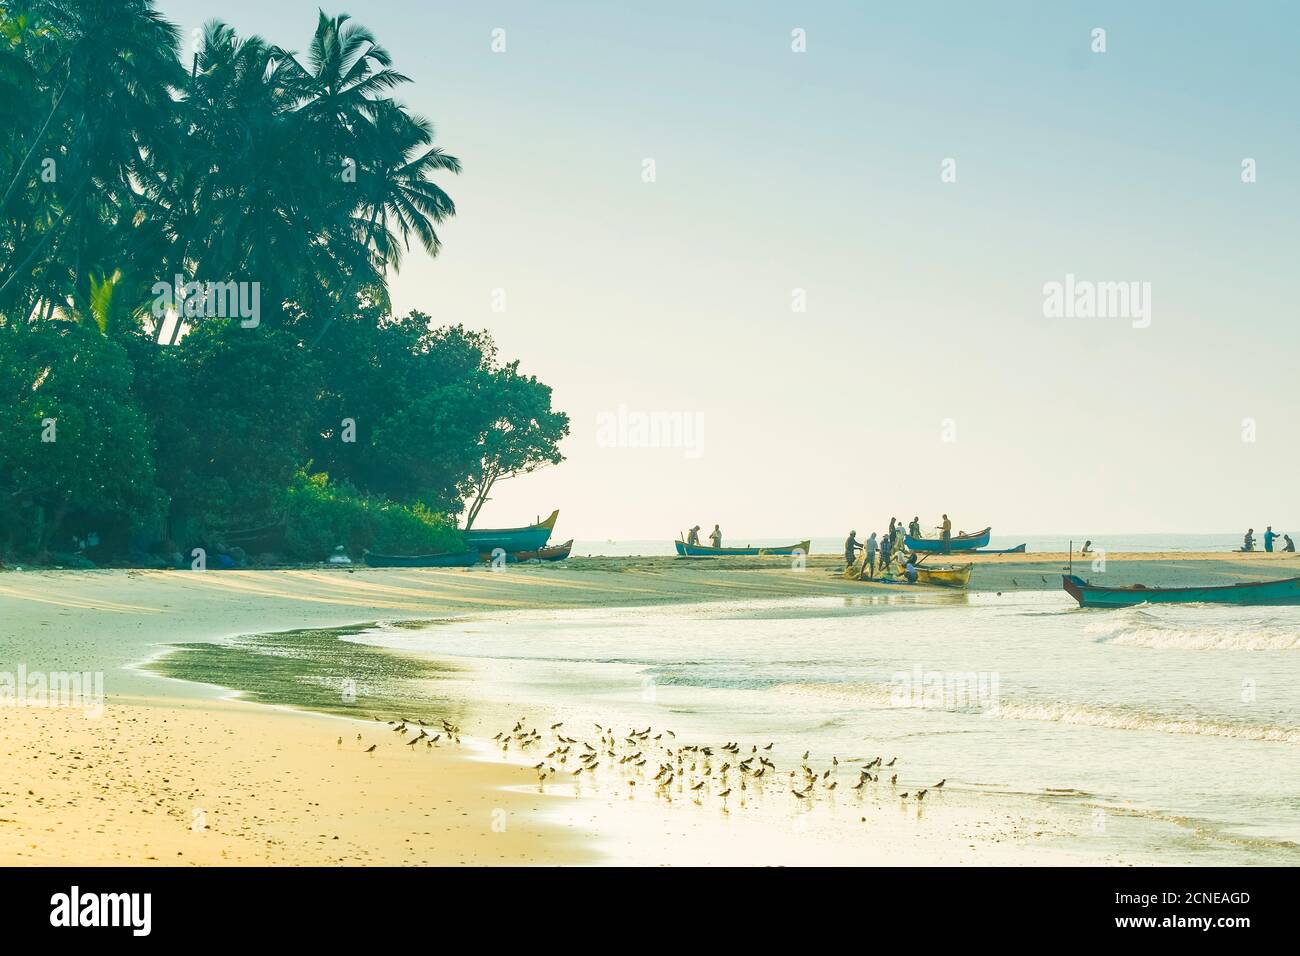 Fischer und Watvögel am schönen Kizhunna Strand, südlich von Kannur an der Kerala Nordküste, Kizhunna, Kannur, Kerala, Indien, Asien Stockfoto